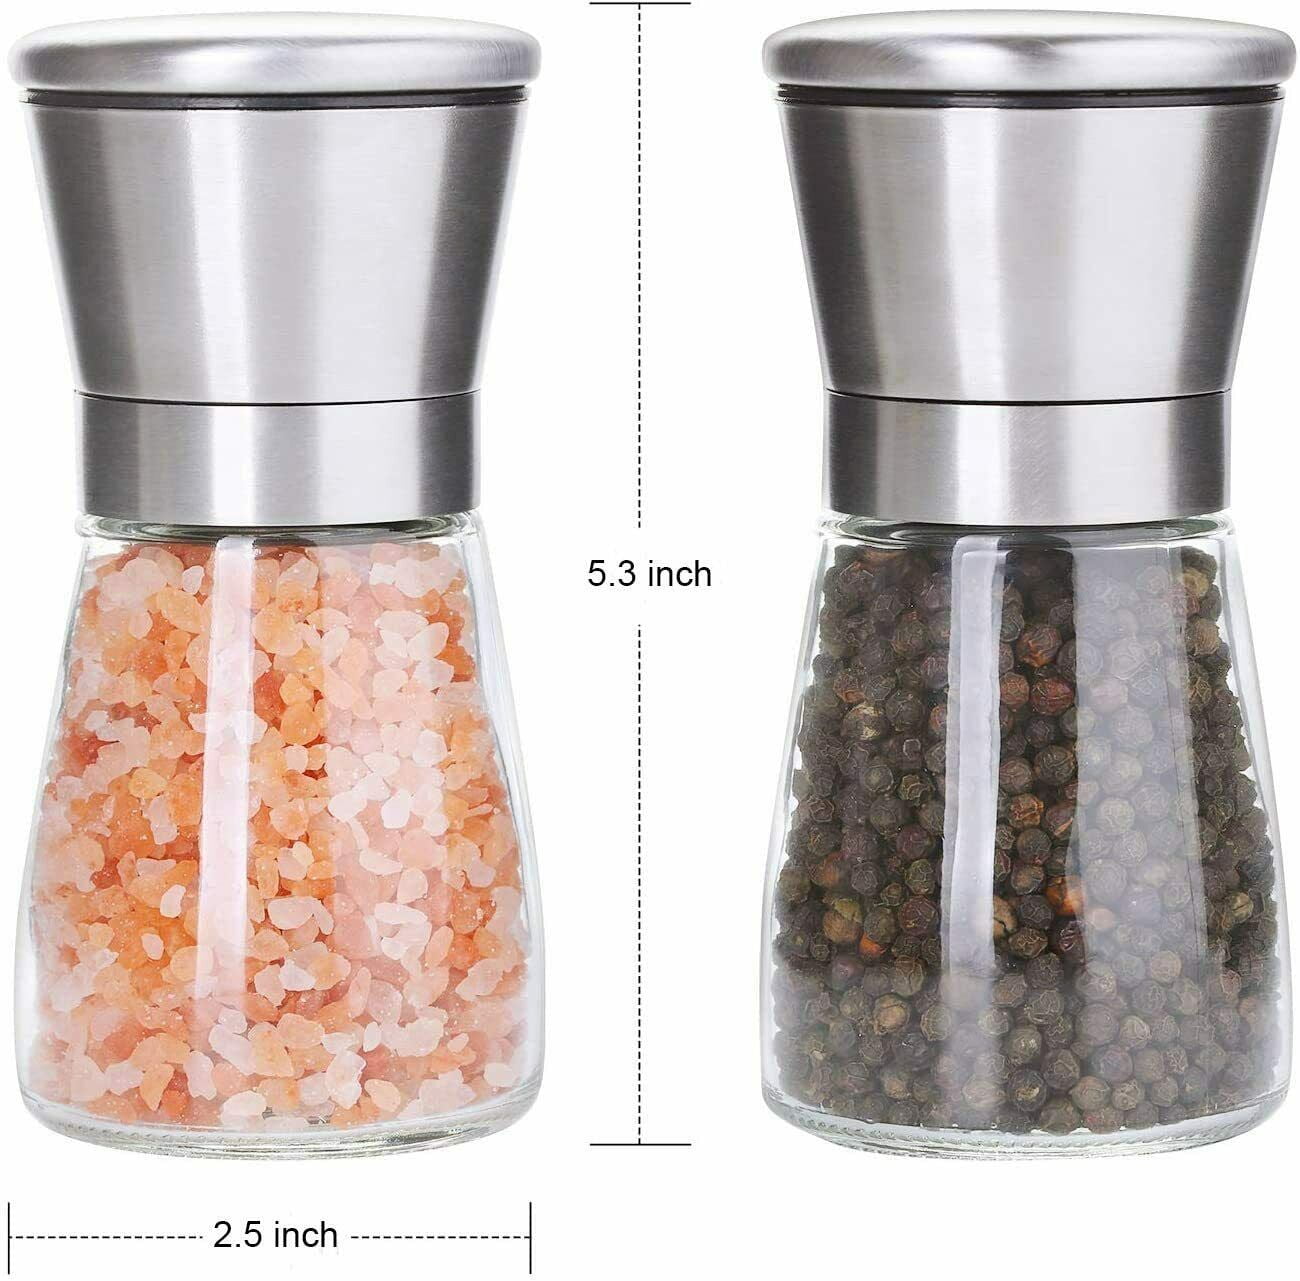 Hot Latin Salt Shakers